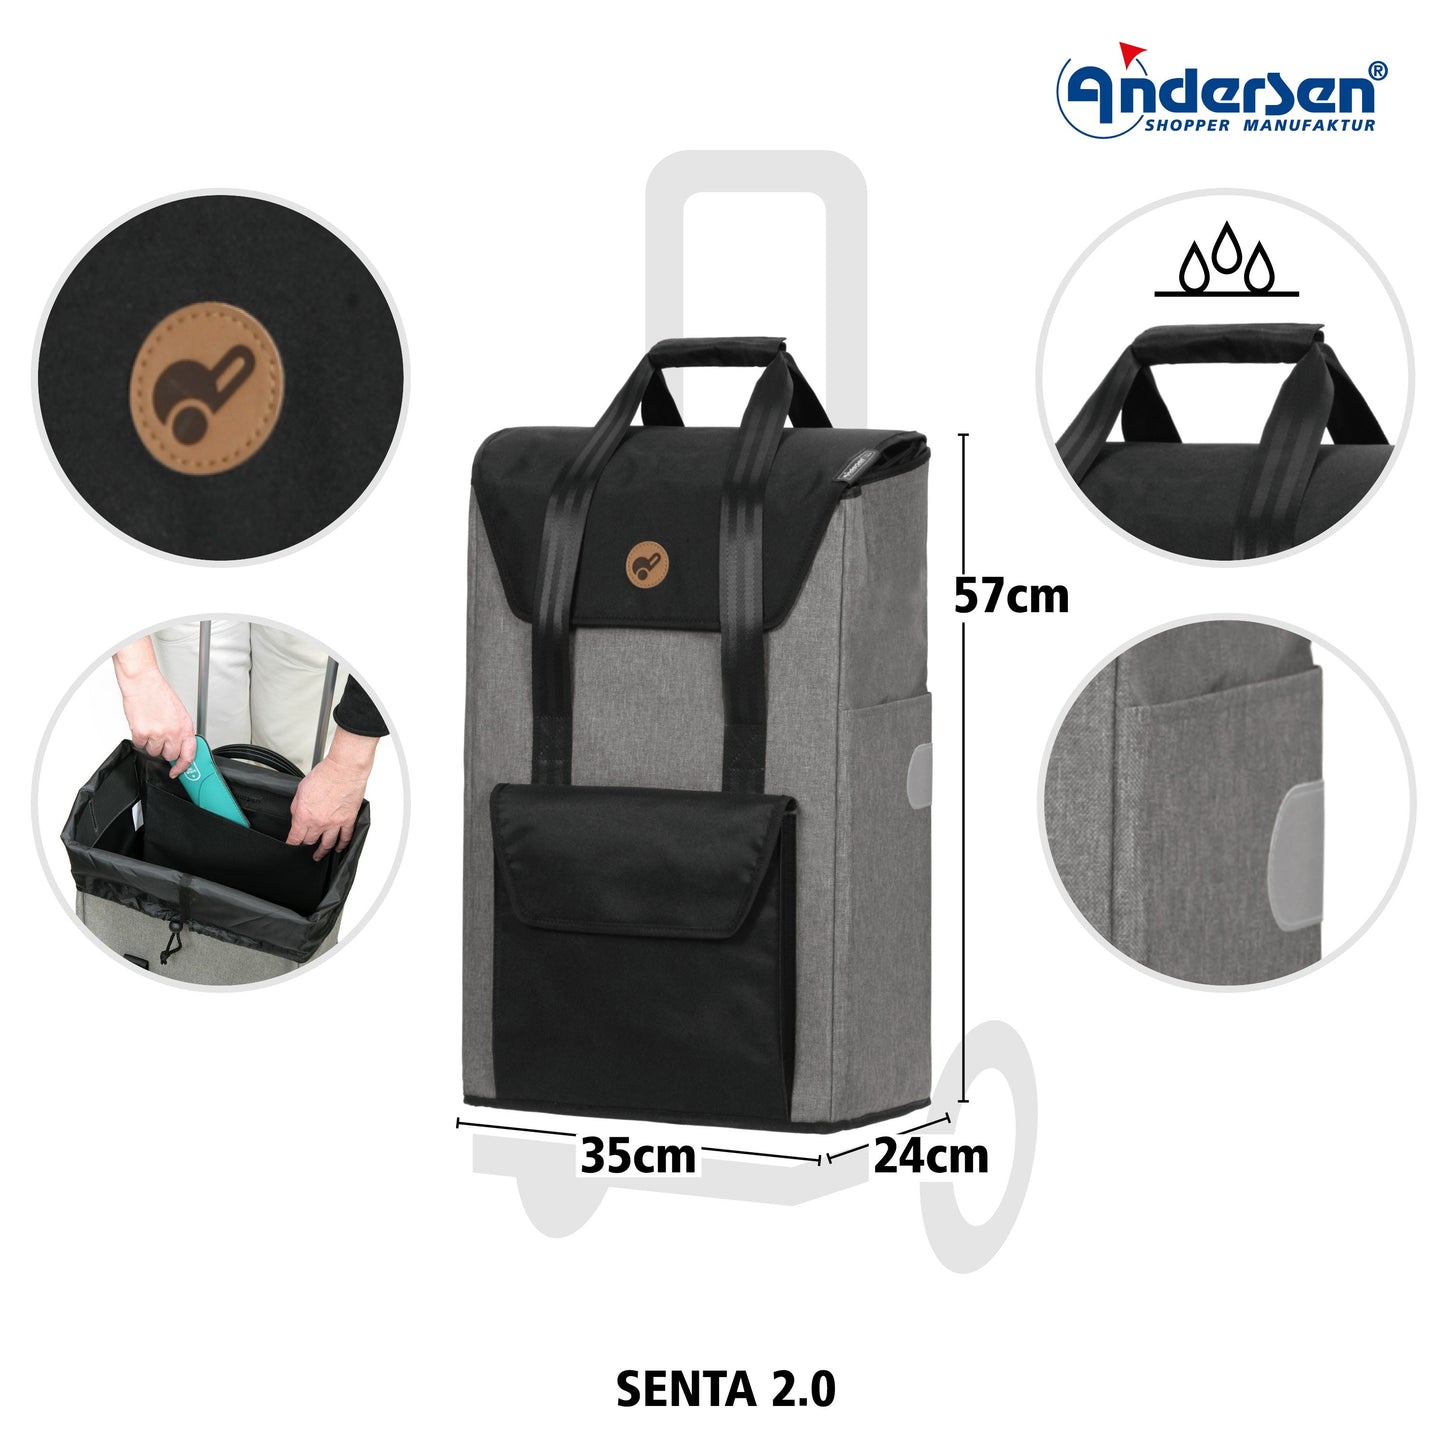 Andersen Shopper Manufaktur-Senta 2.0 grau-www.shopping-trolley.ch-bild2